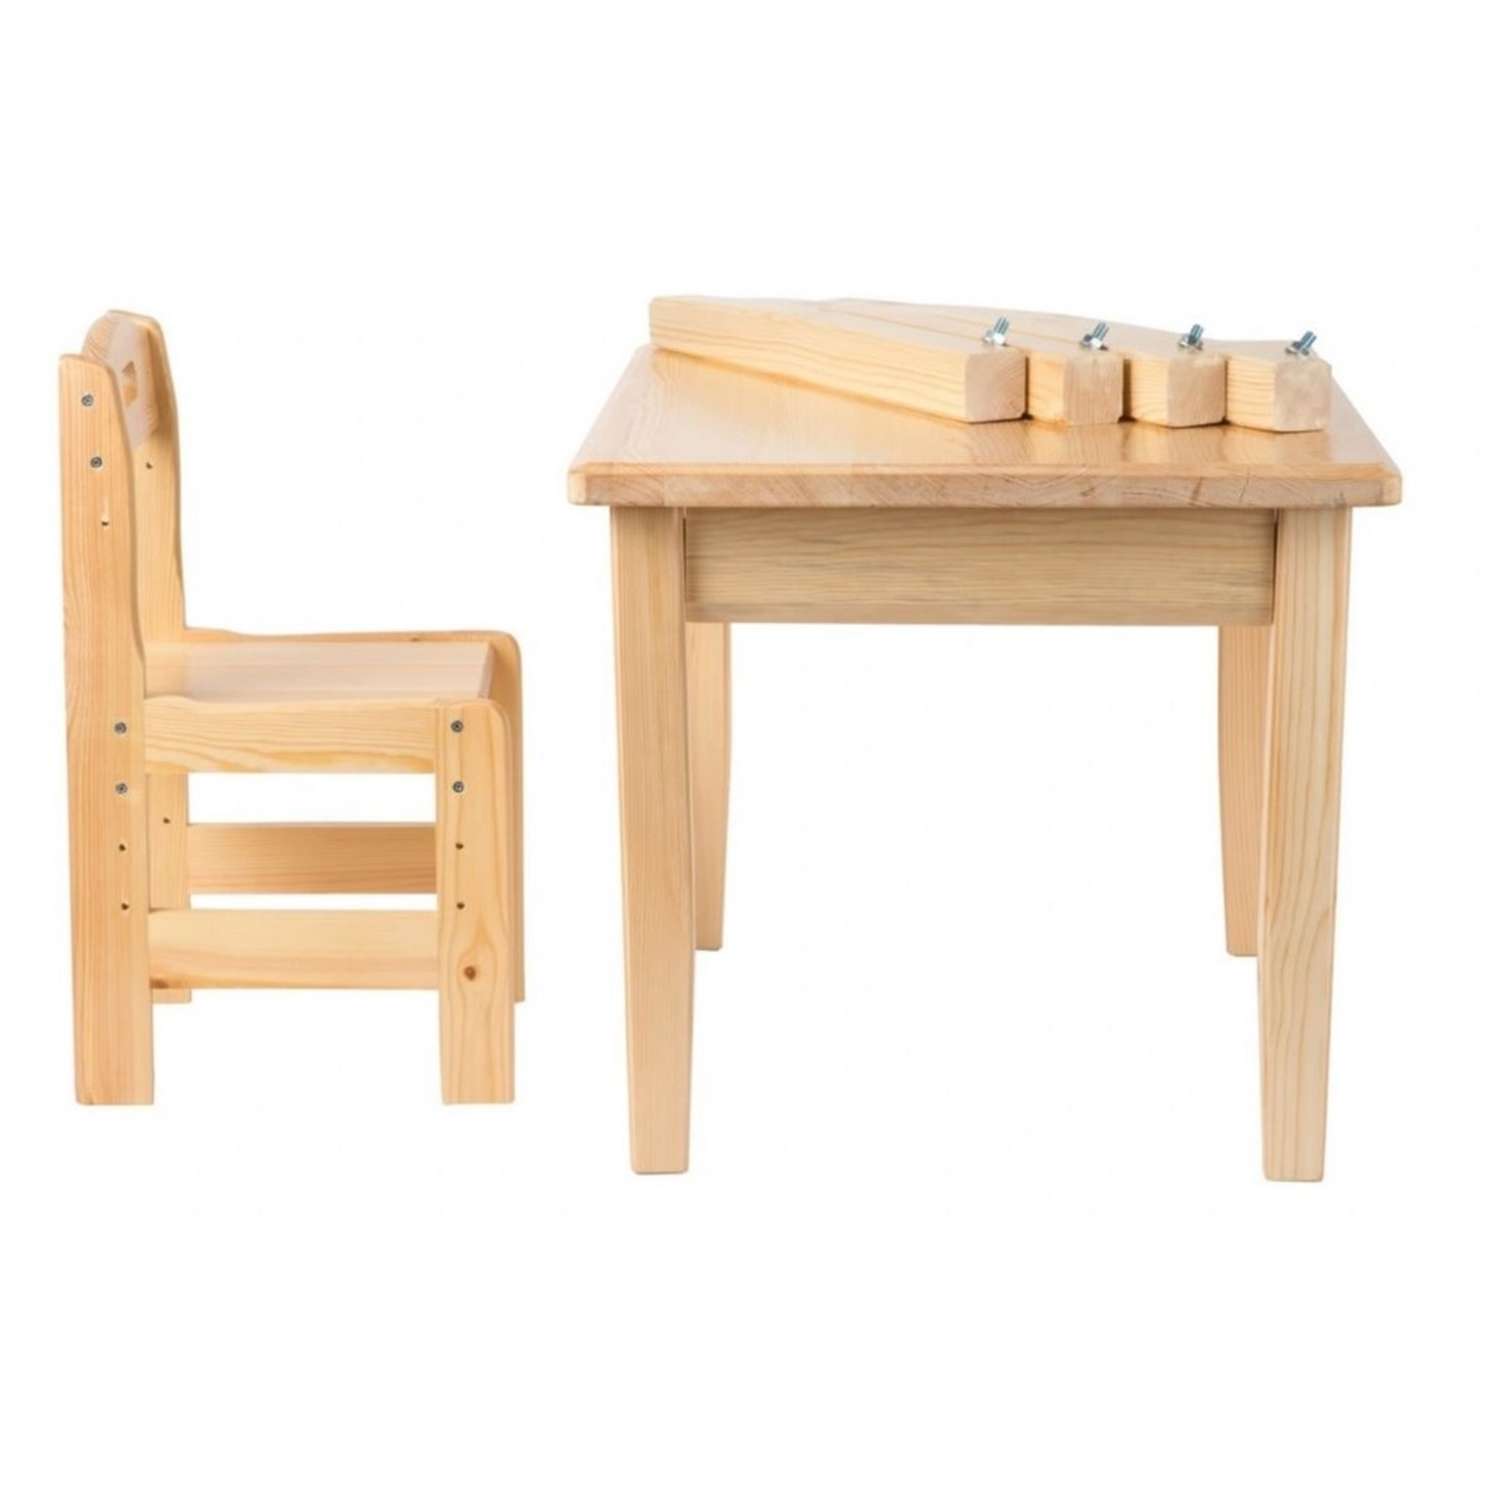 Набор мебели Мебель для дошколят стол со стульчиком регулируемый для детей от 4 до 8 лет - фото 2